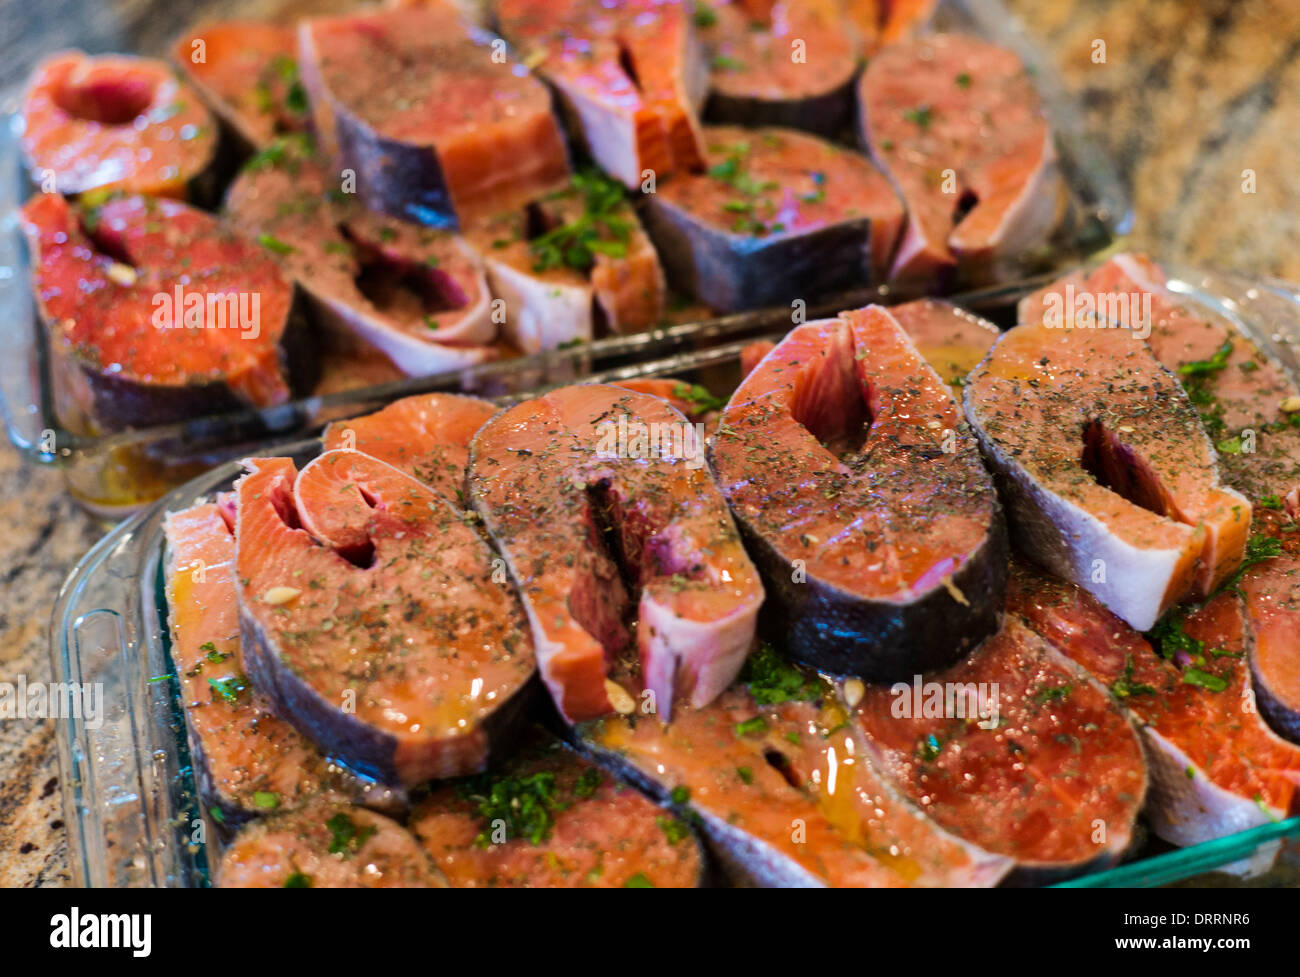 Frische Coho (Silber) Lachs Steaks aus Alaska, marinade vor dem Grillen Stockfoto